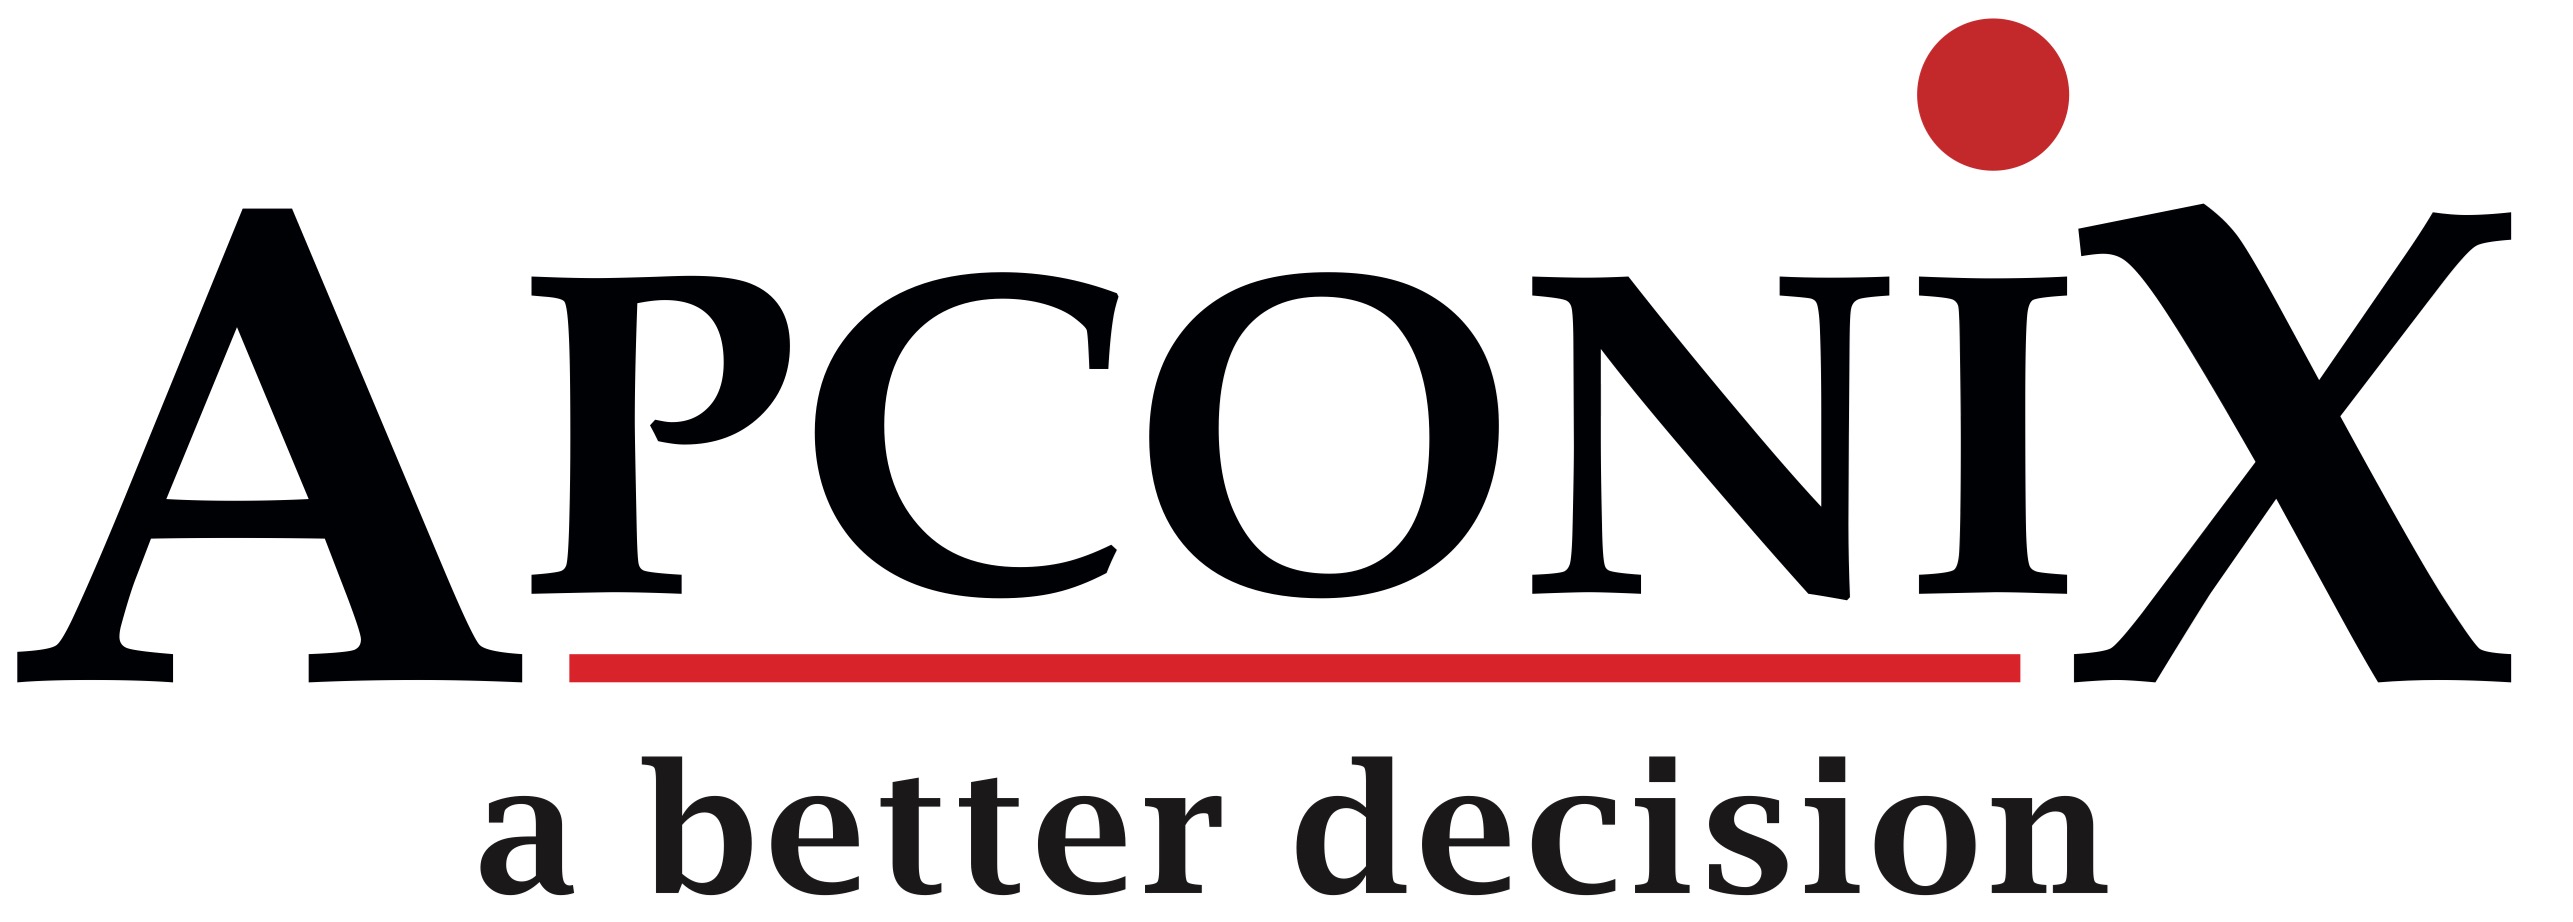 Dec2014 New Logo | ApconiX